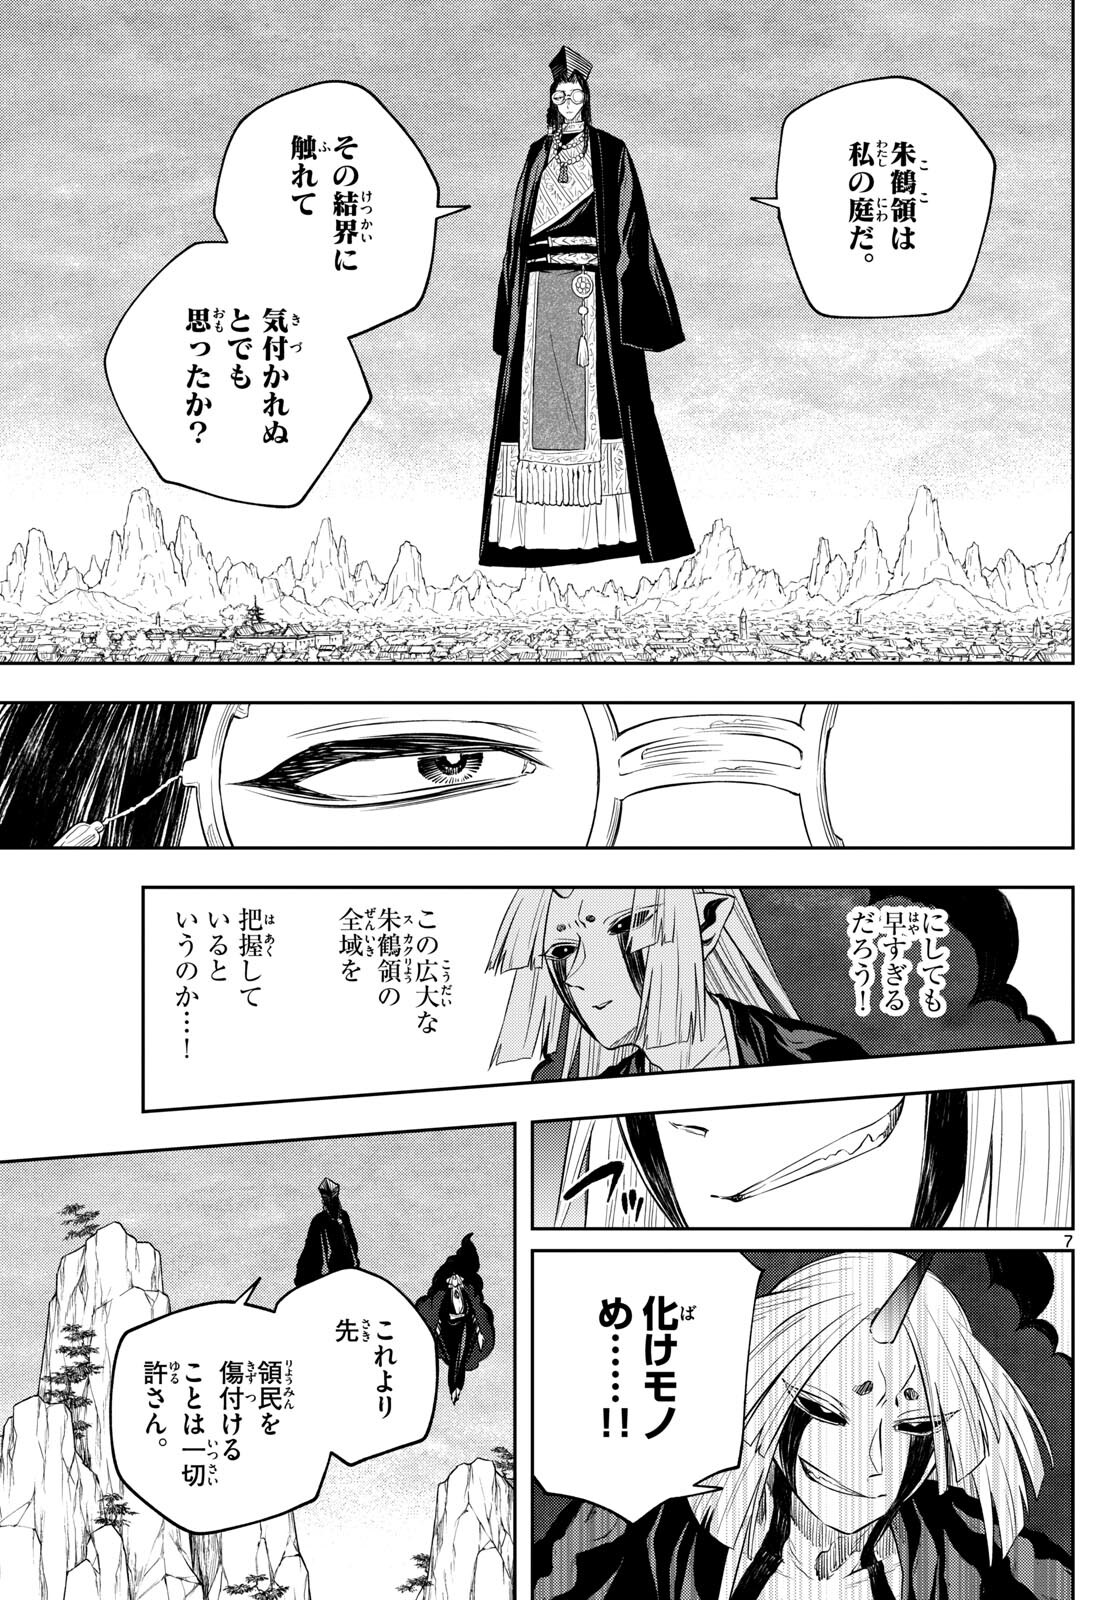 Akatsuki Jihen - Chapter 42 - Page 7